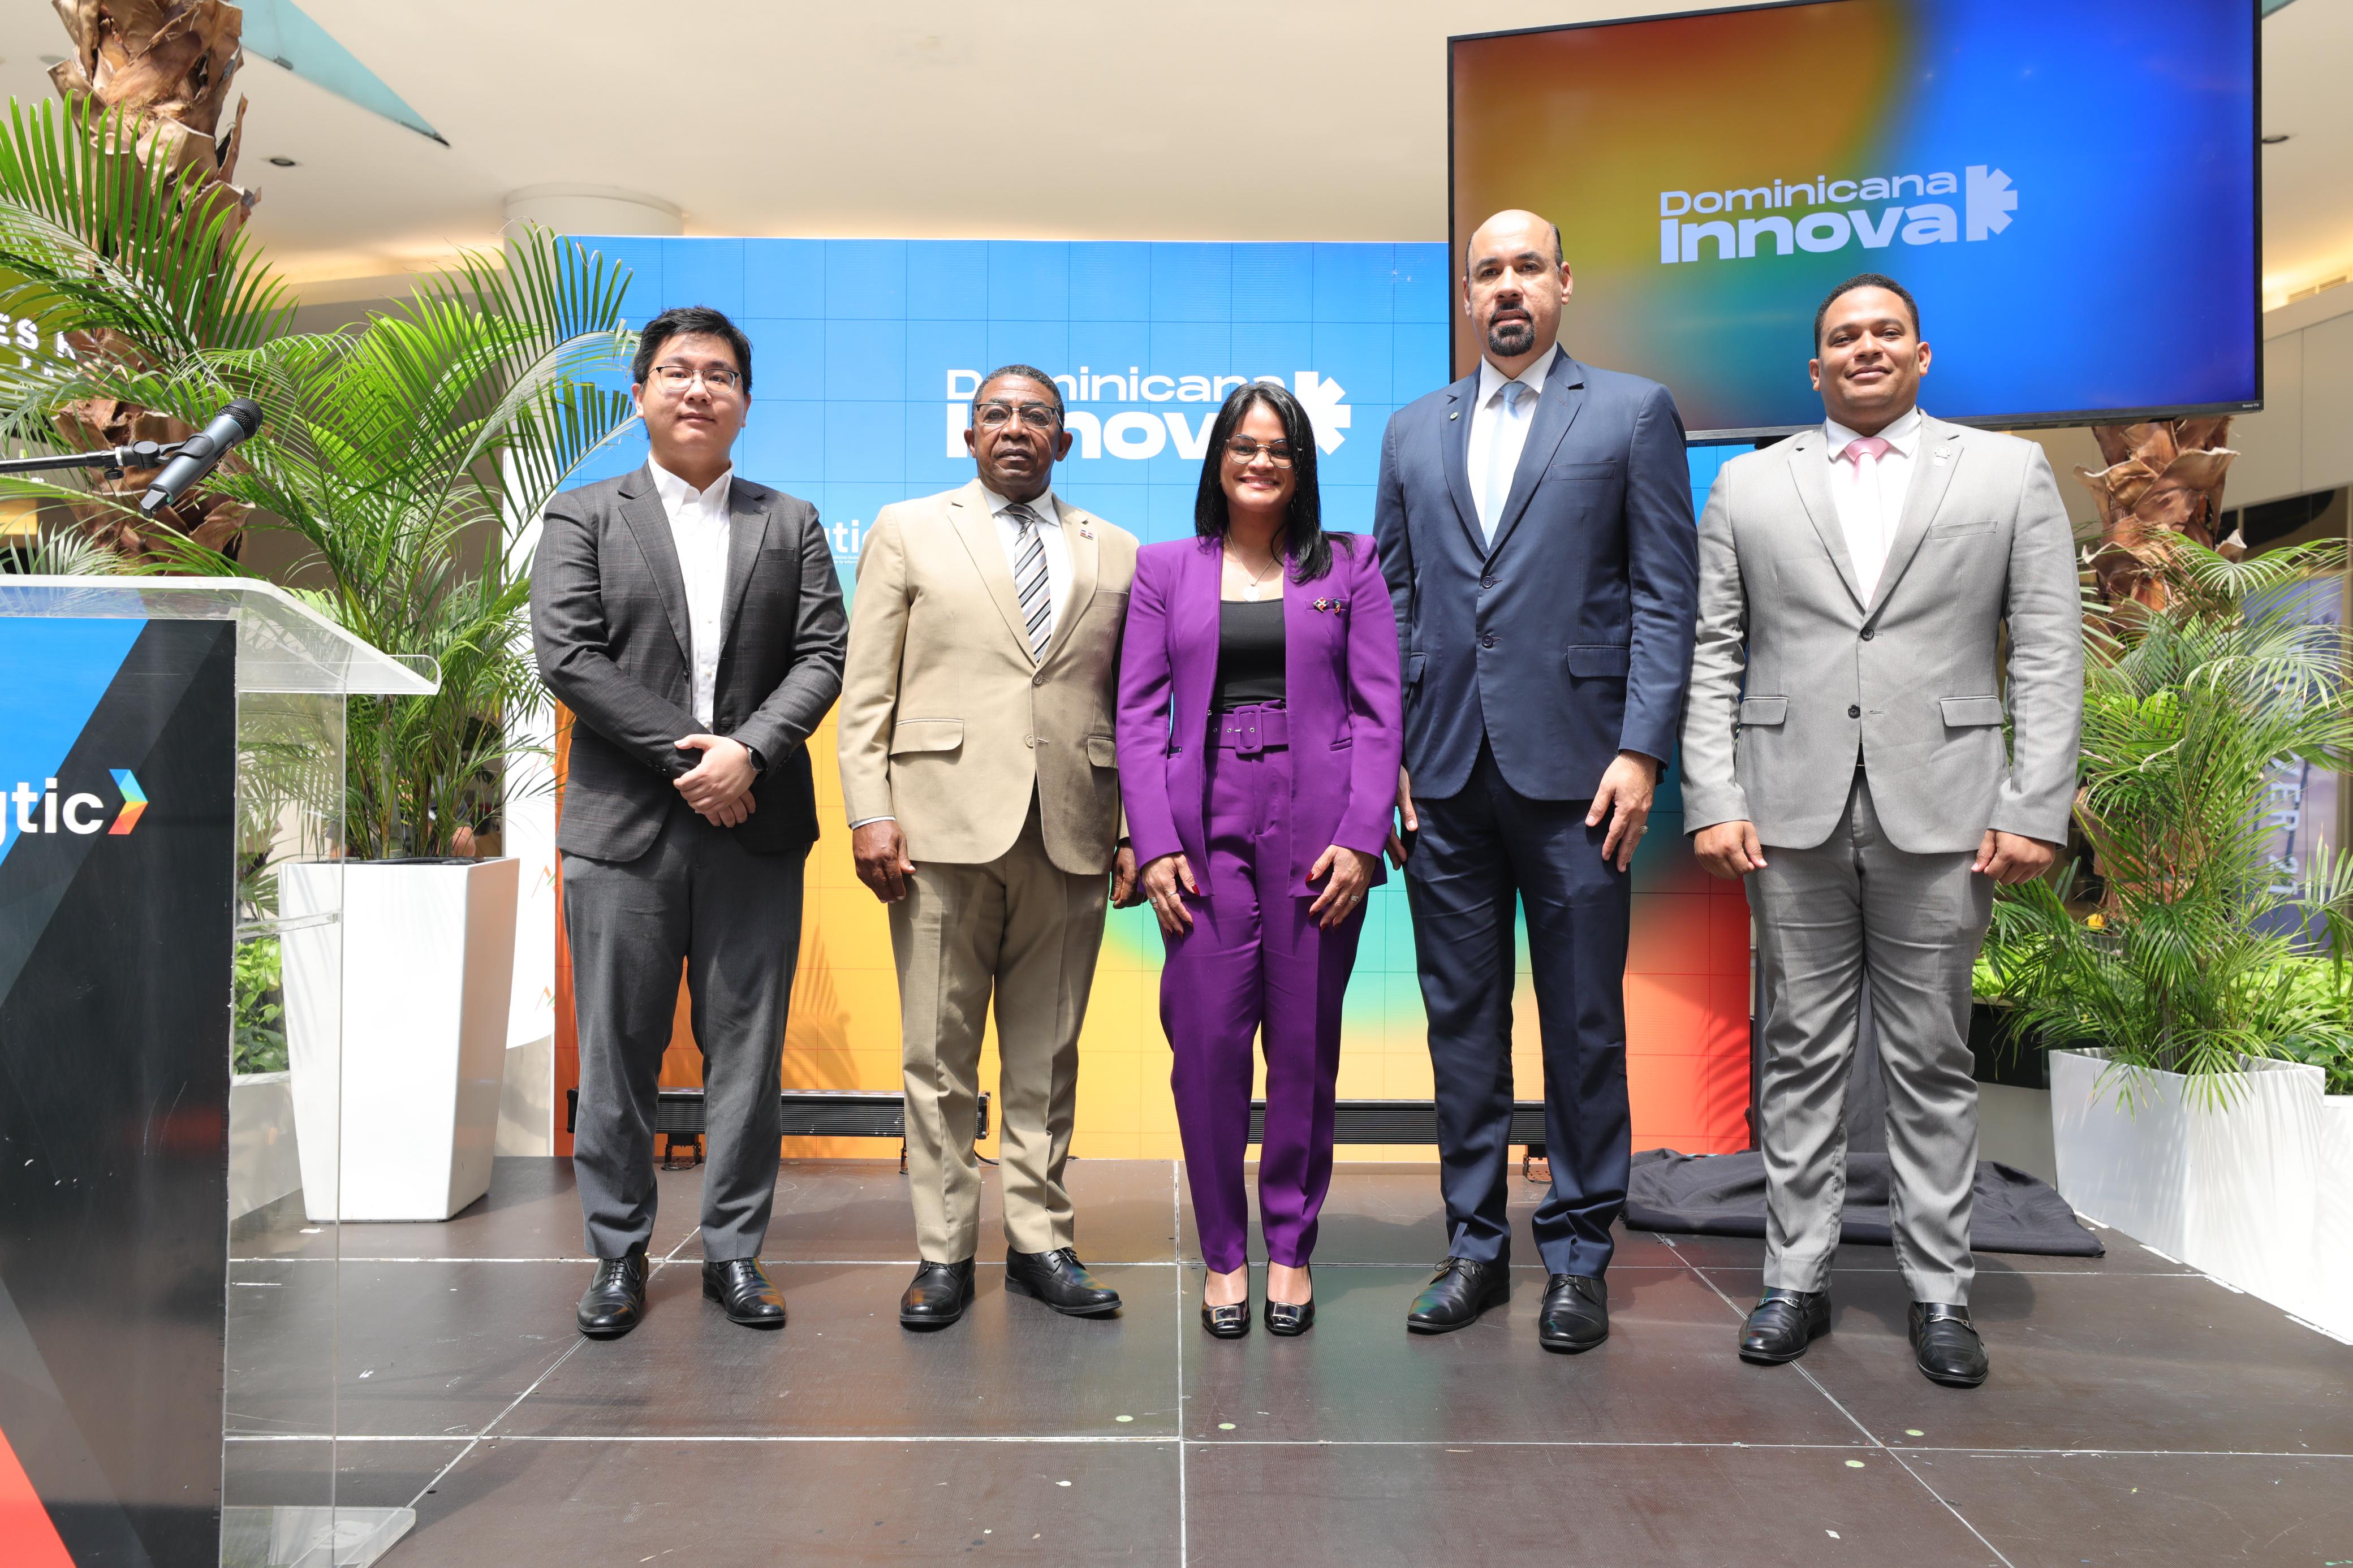 Universidades dominicanas demuestran sus avances en tecnología e innovación en Feria Universitaria de Dominicana Innova